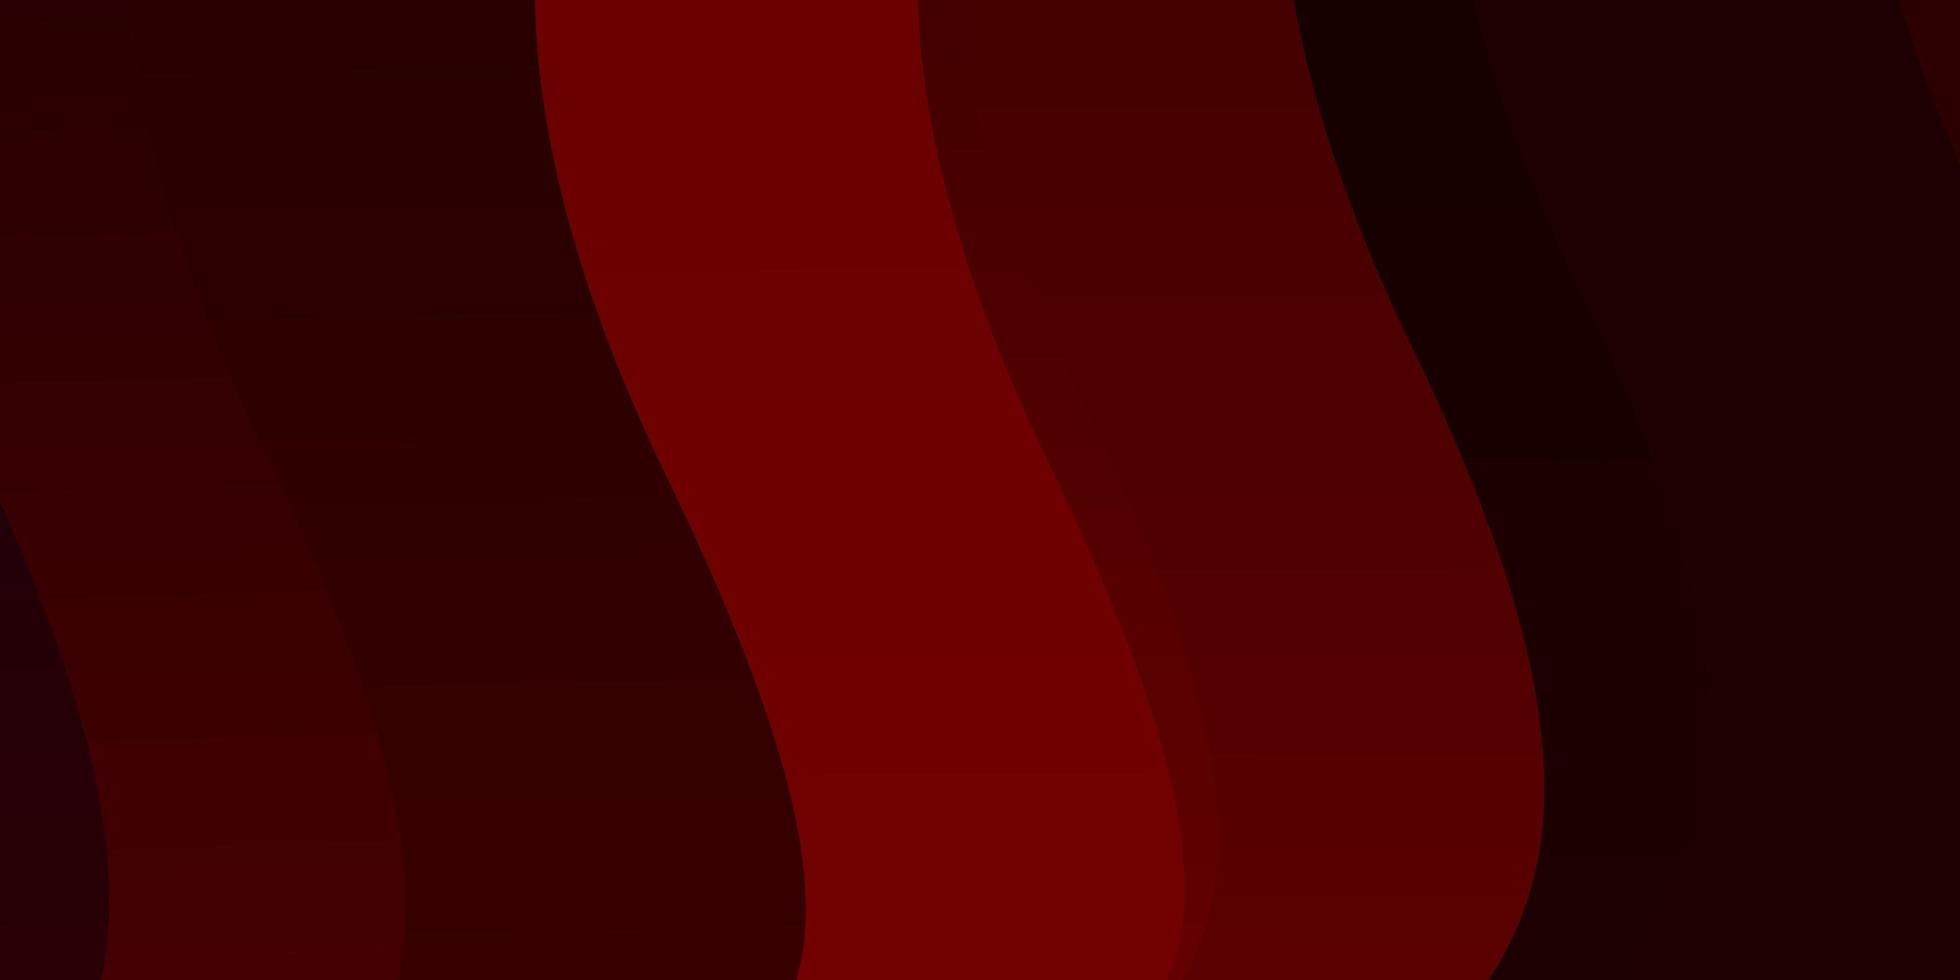 fundo vector vermelho escuro com linhas curvas.